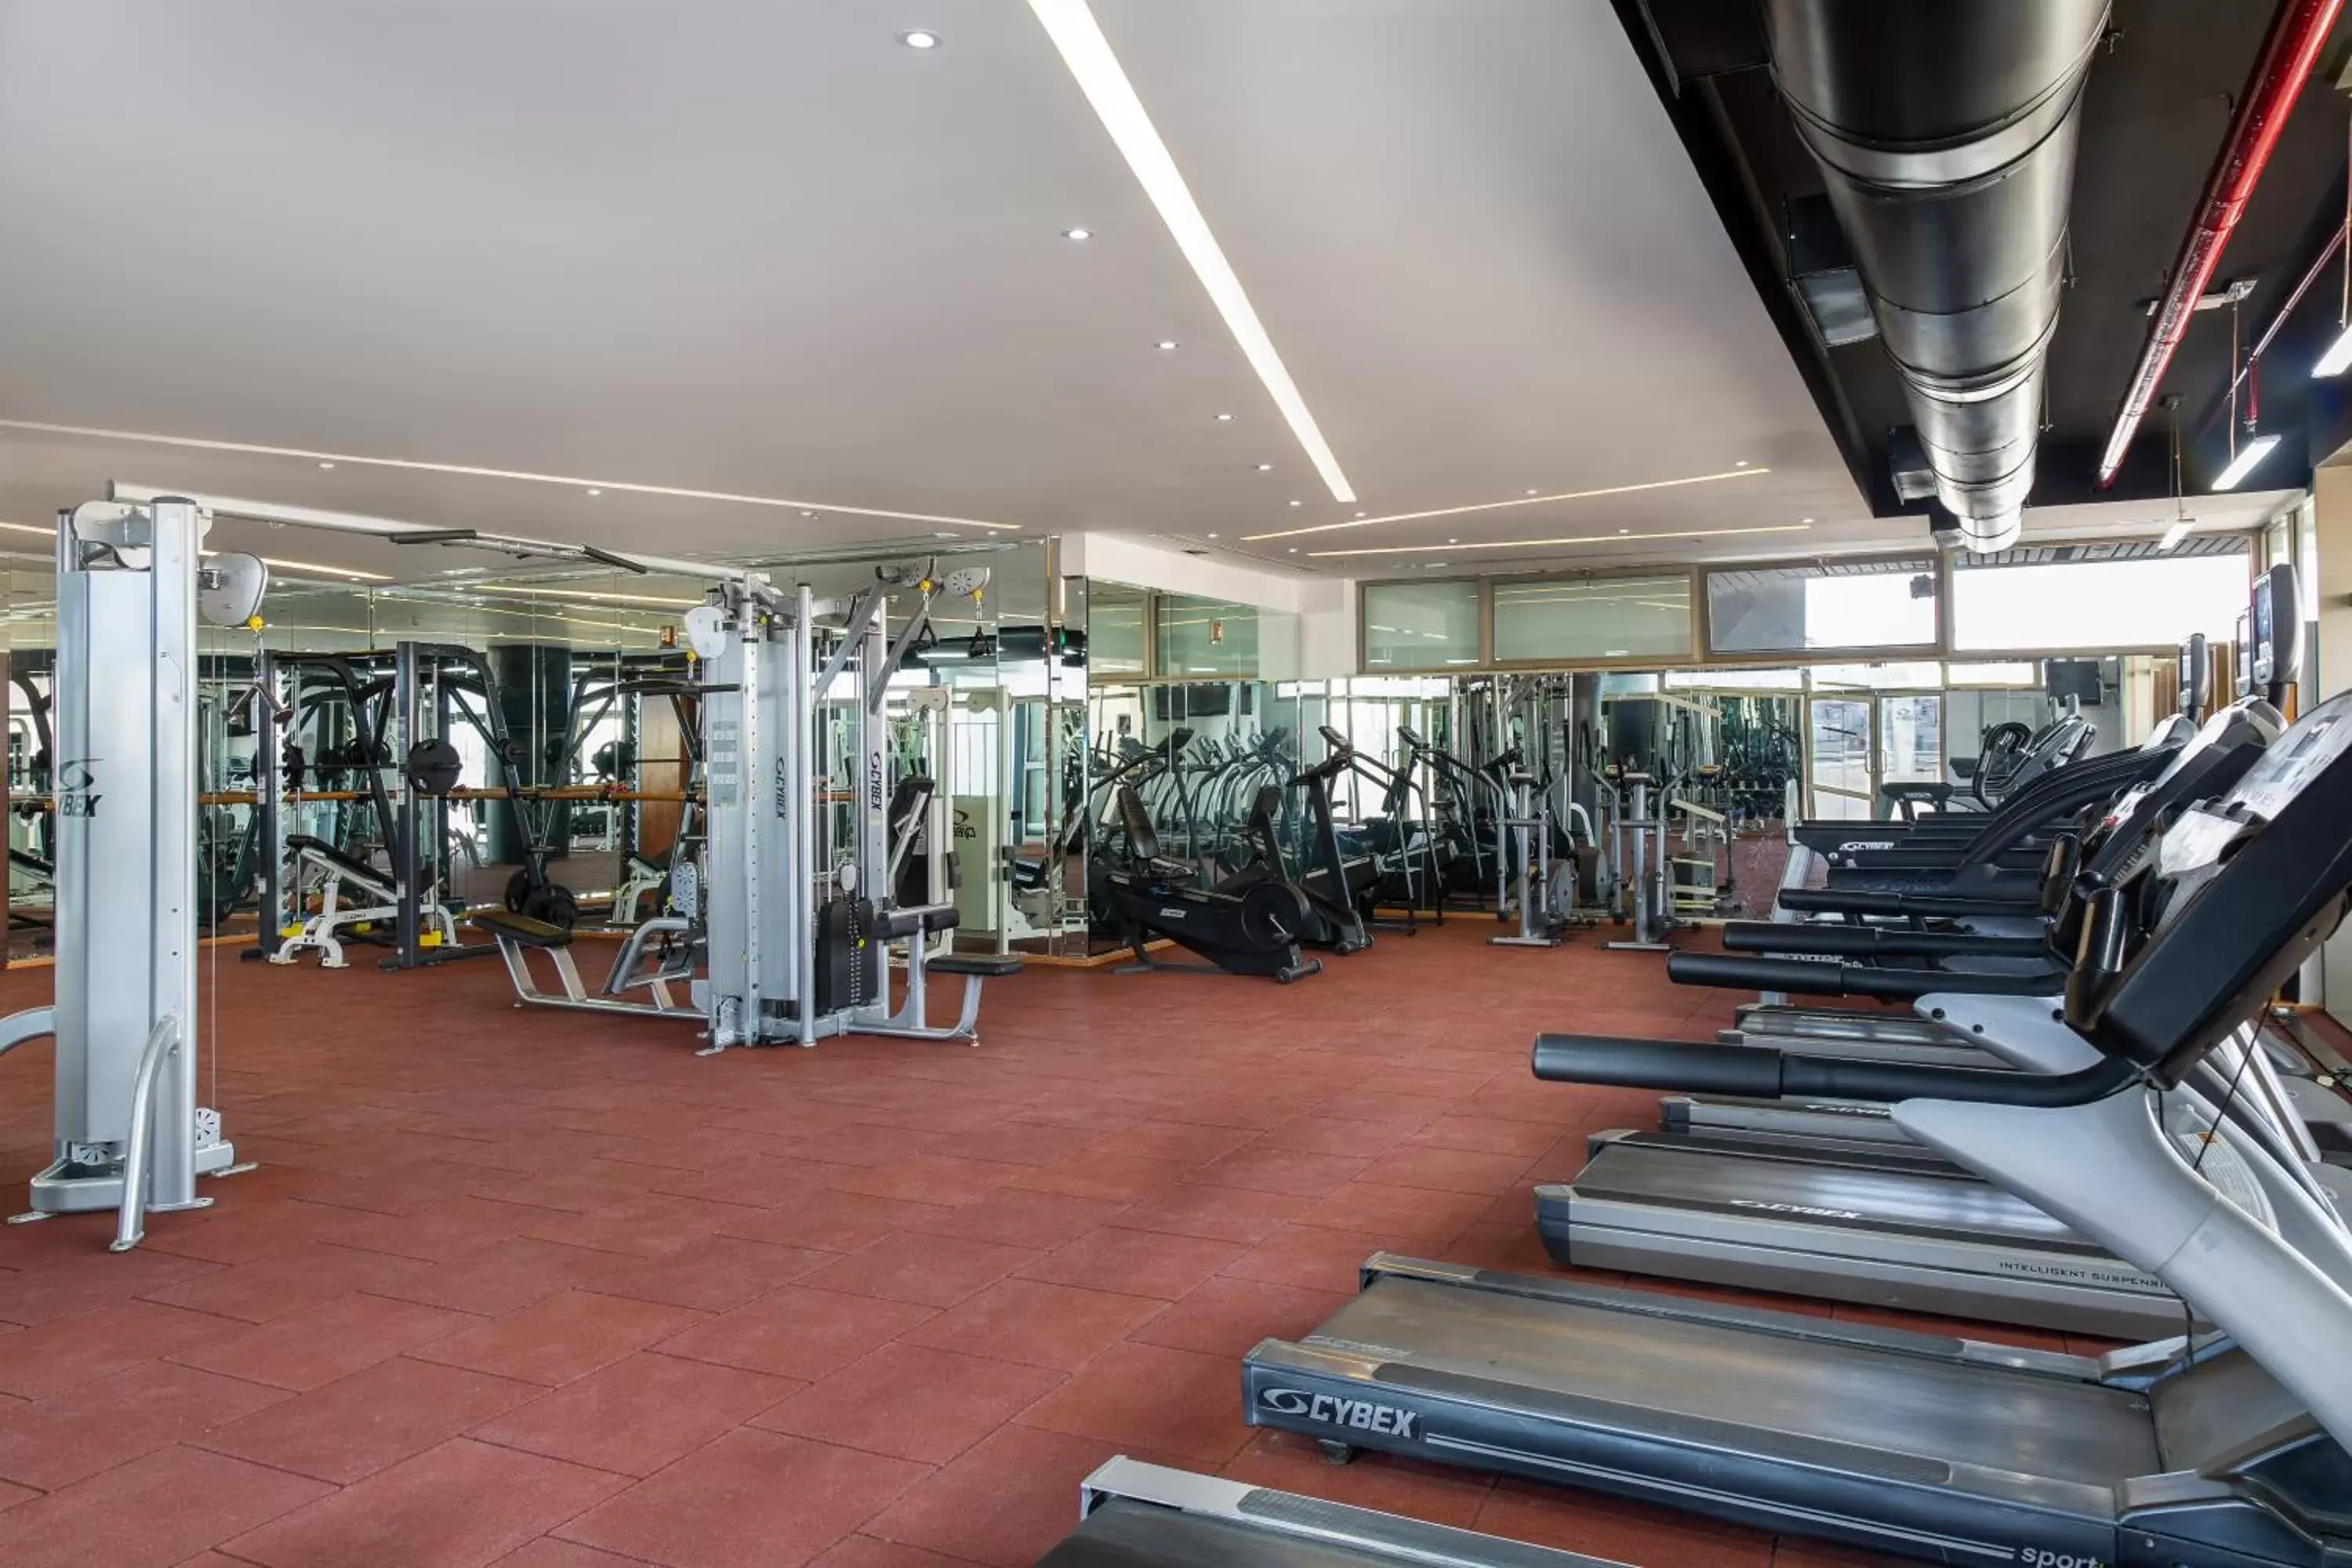 Fitness centre/facilities, Fitness Center/Facilities in Mövenpick Hotel Amman